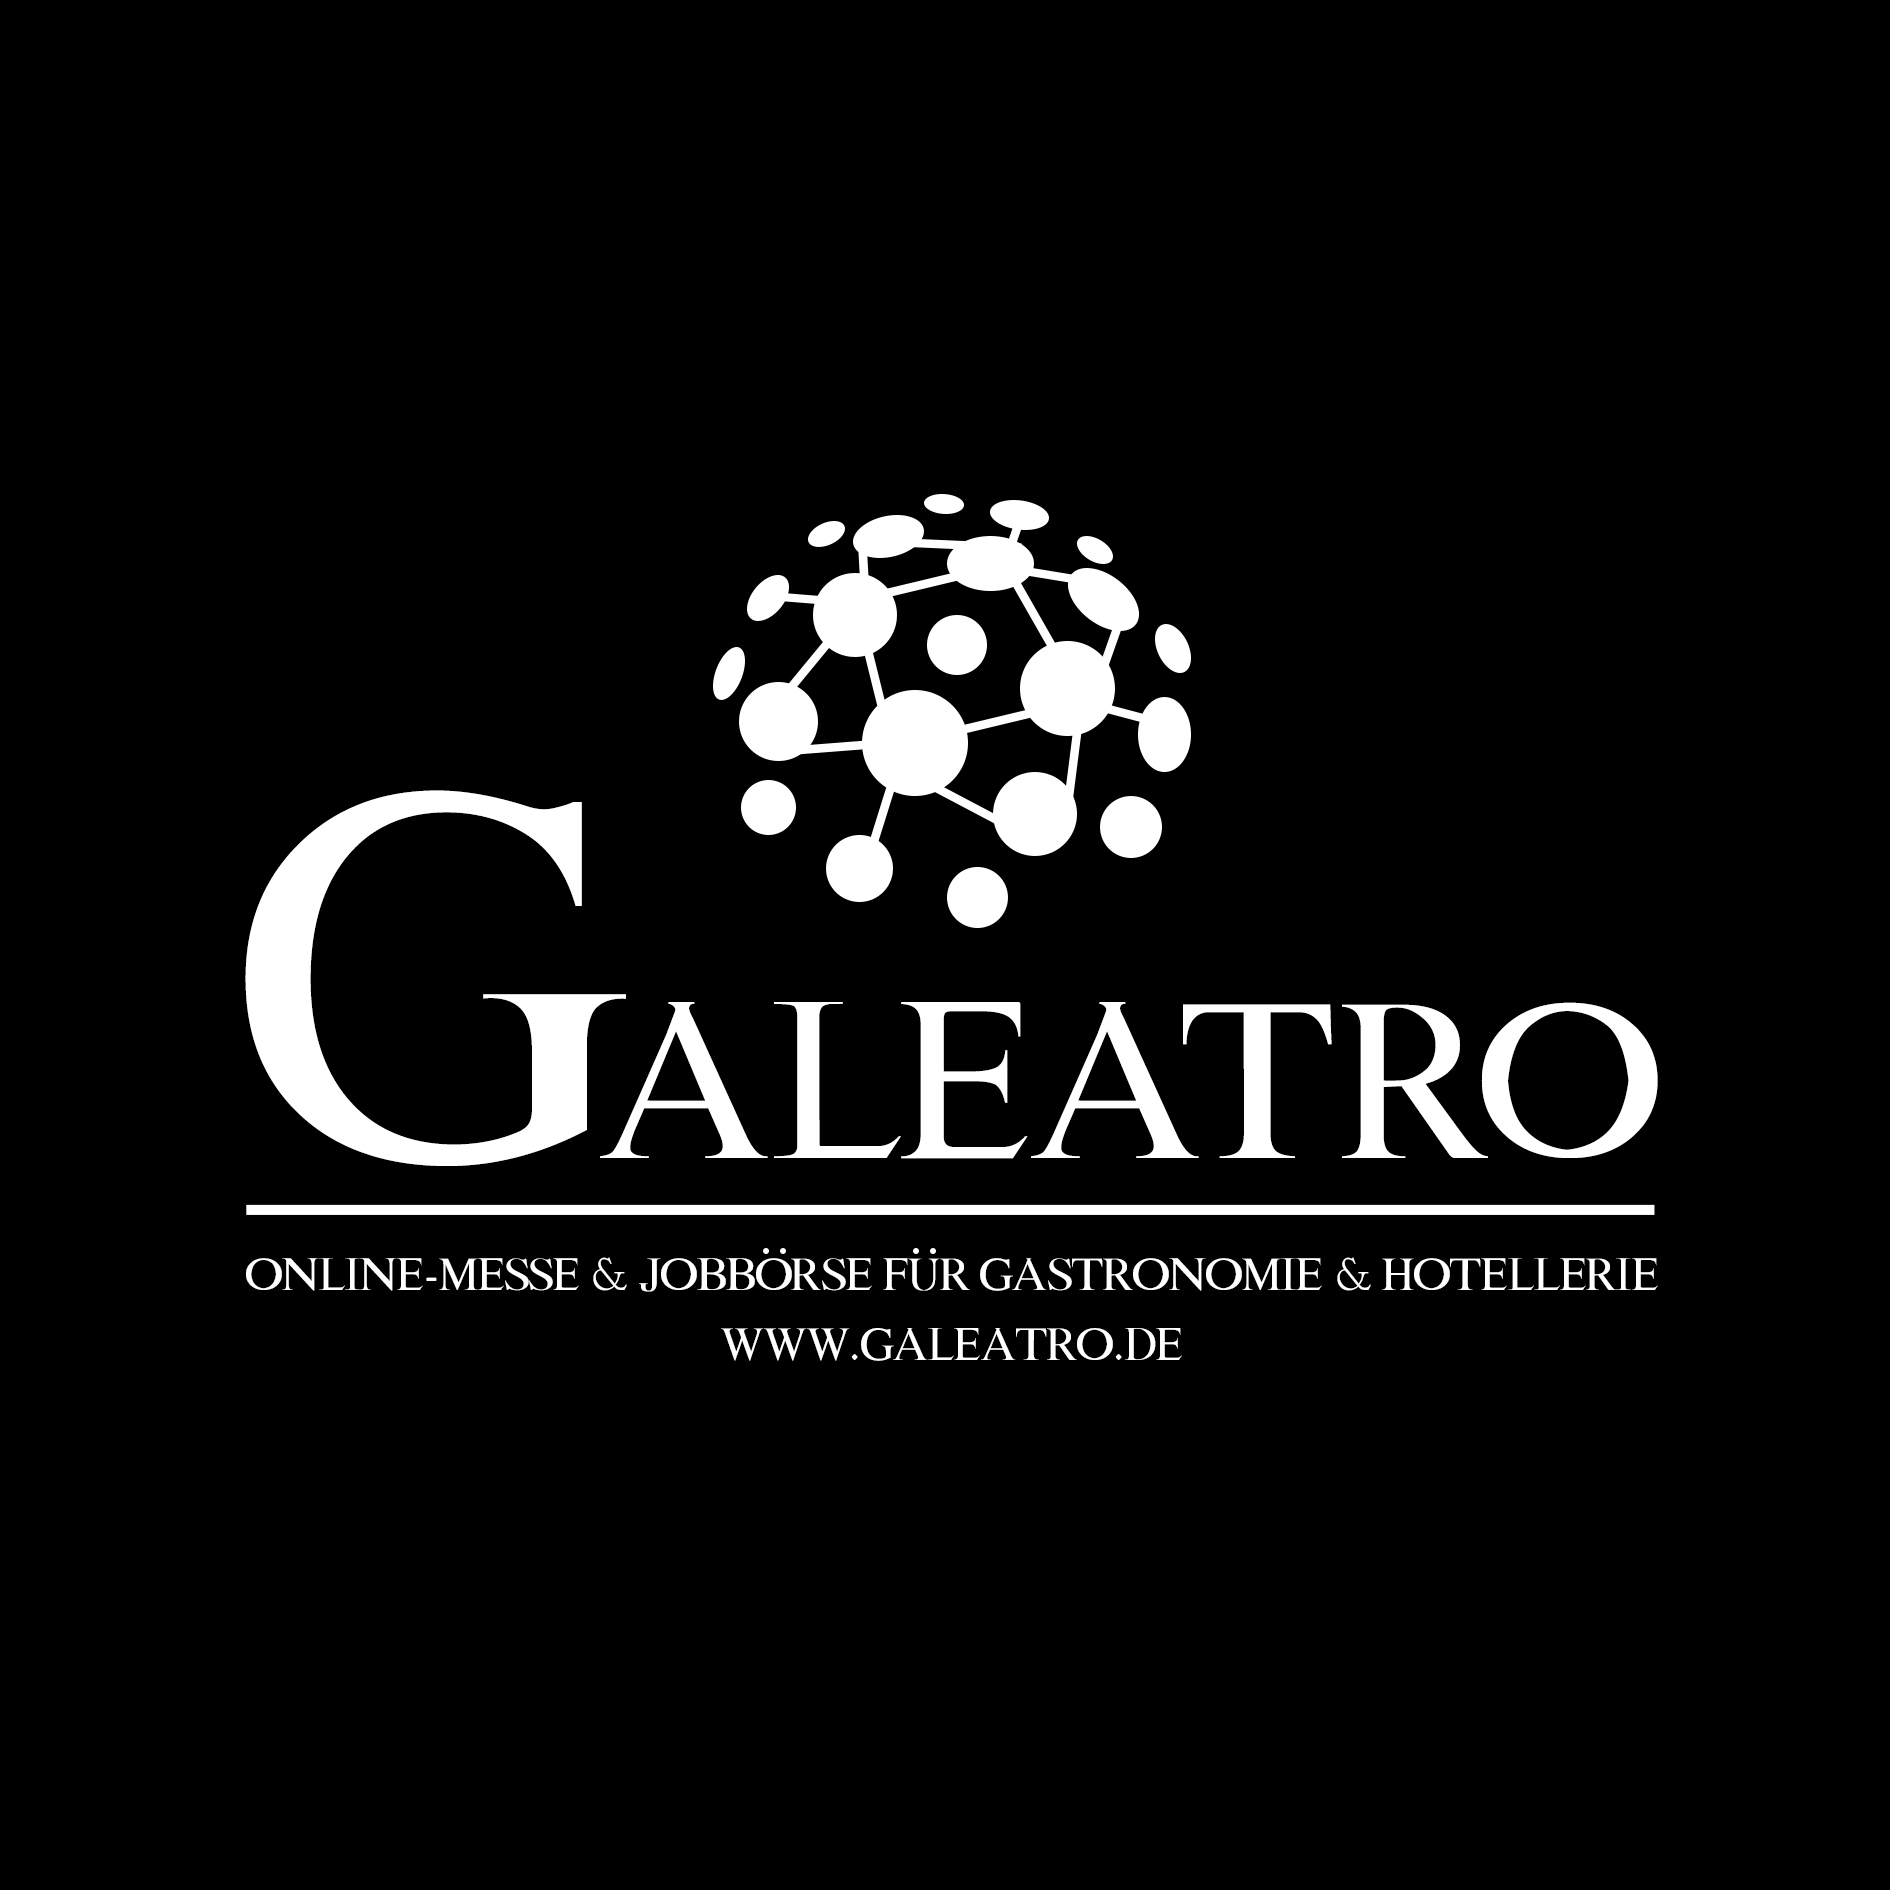 Galeatro